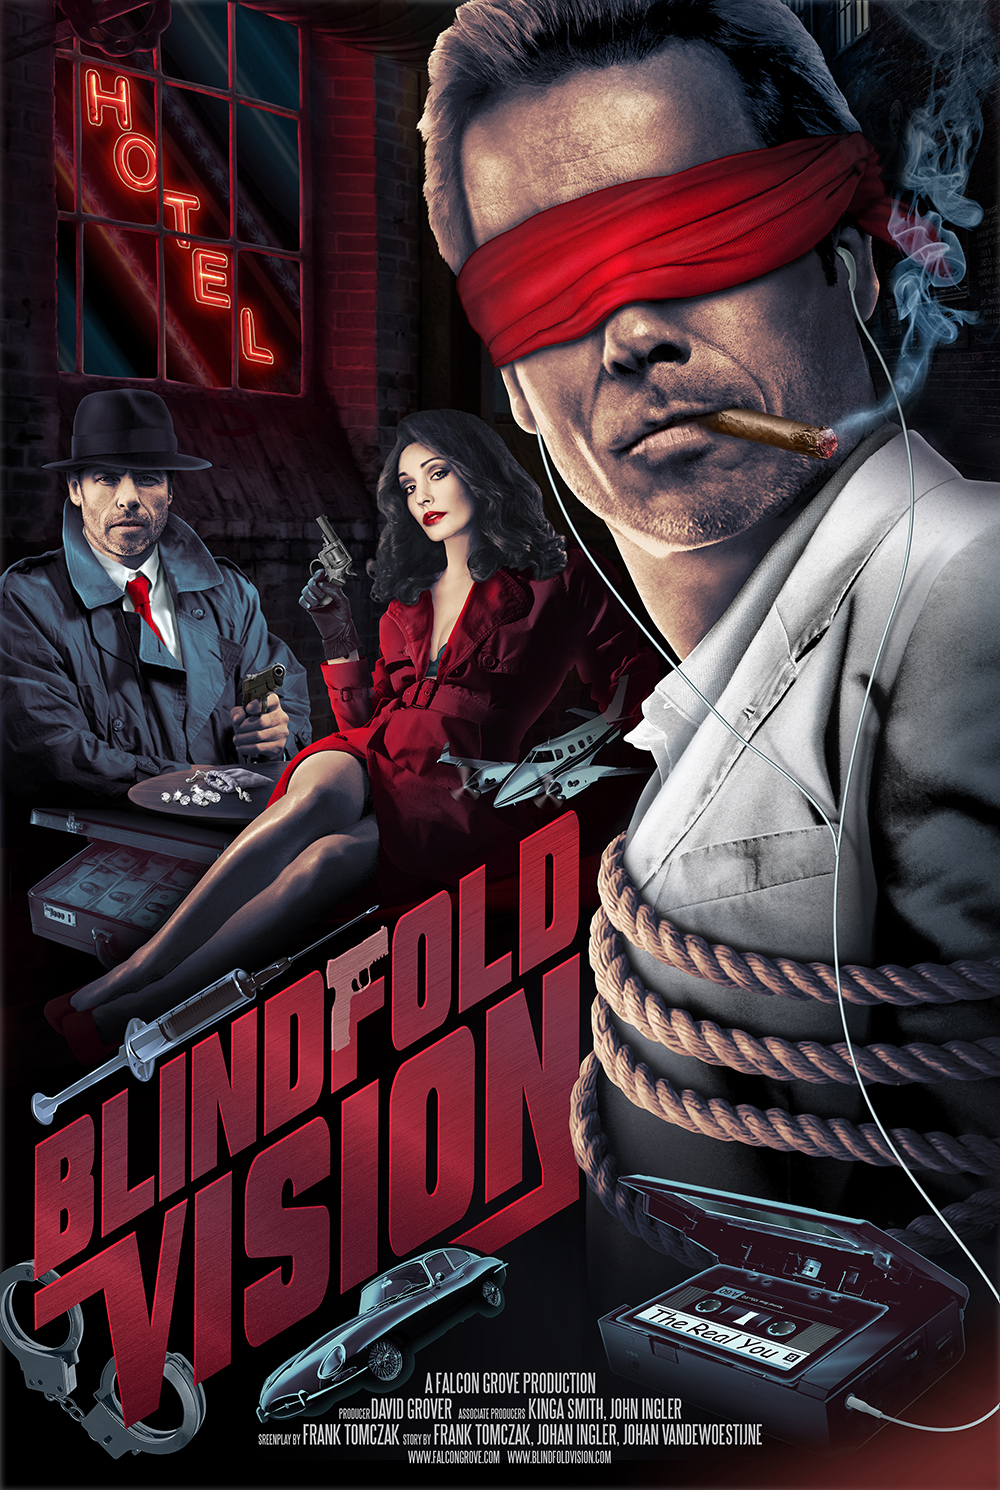 Blindfold Vision